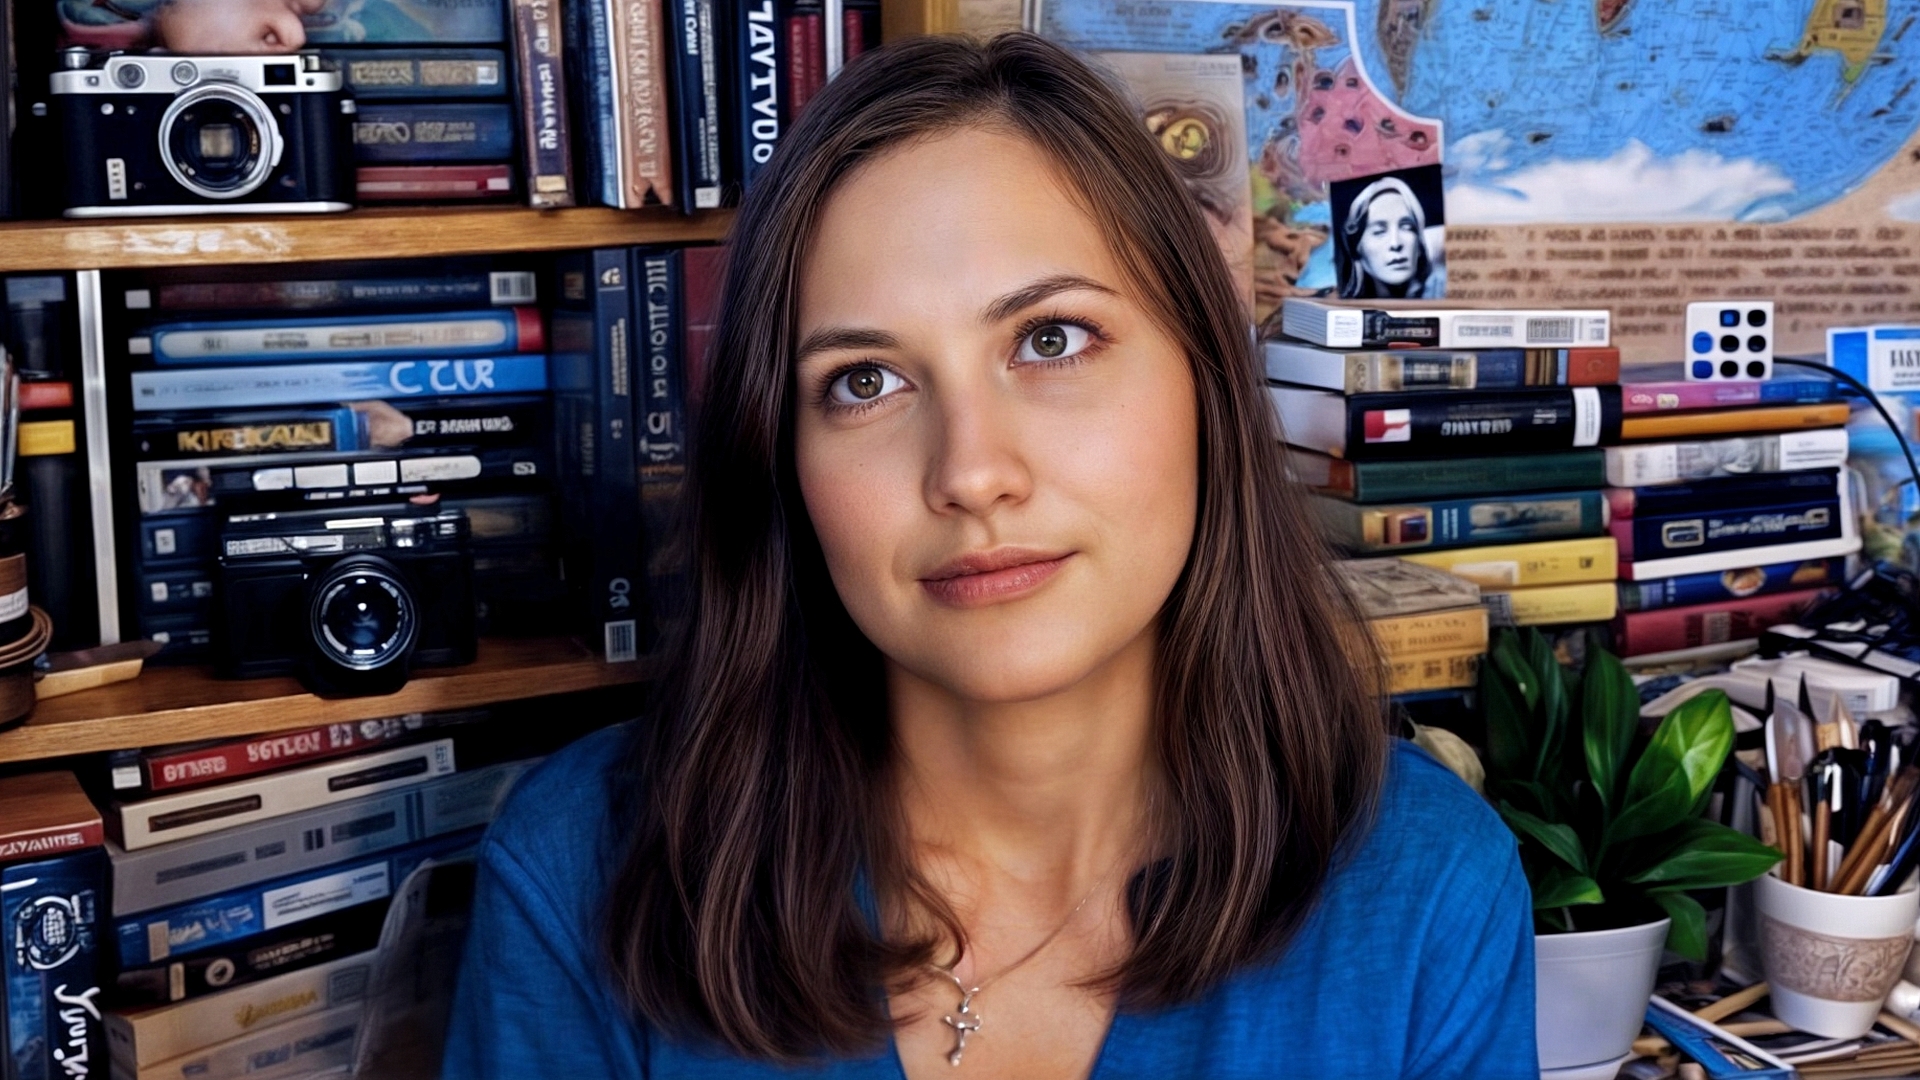 Бесплатное фото Портрет девушки в голубом на фоне книжных полок